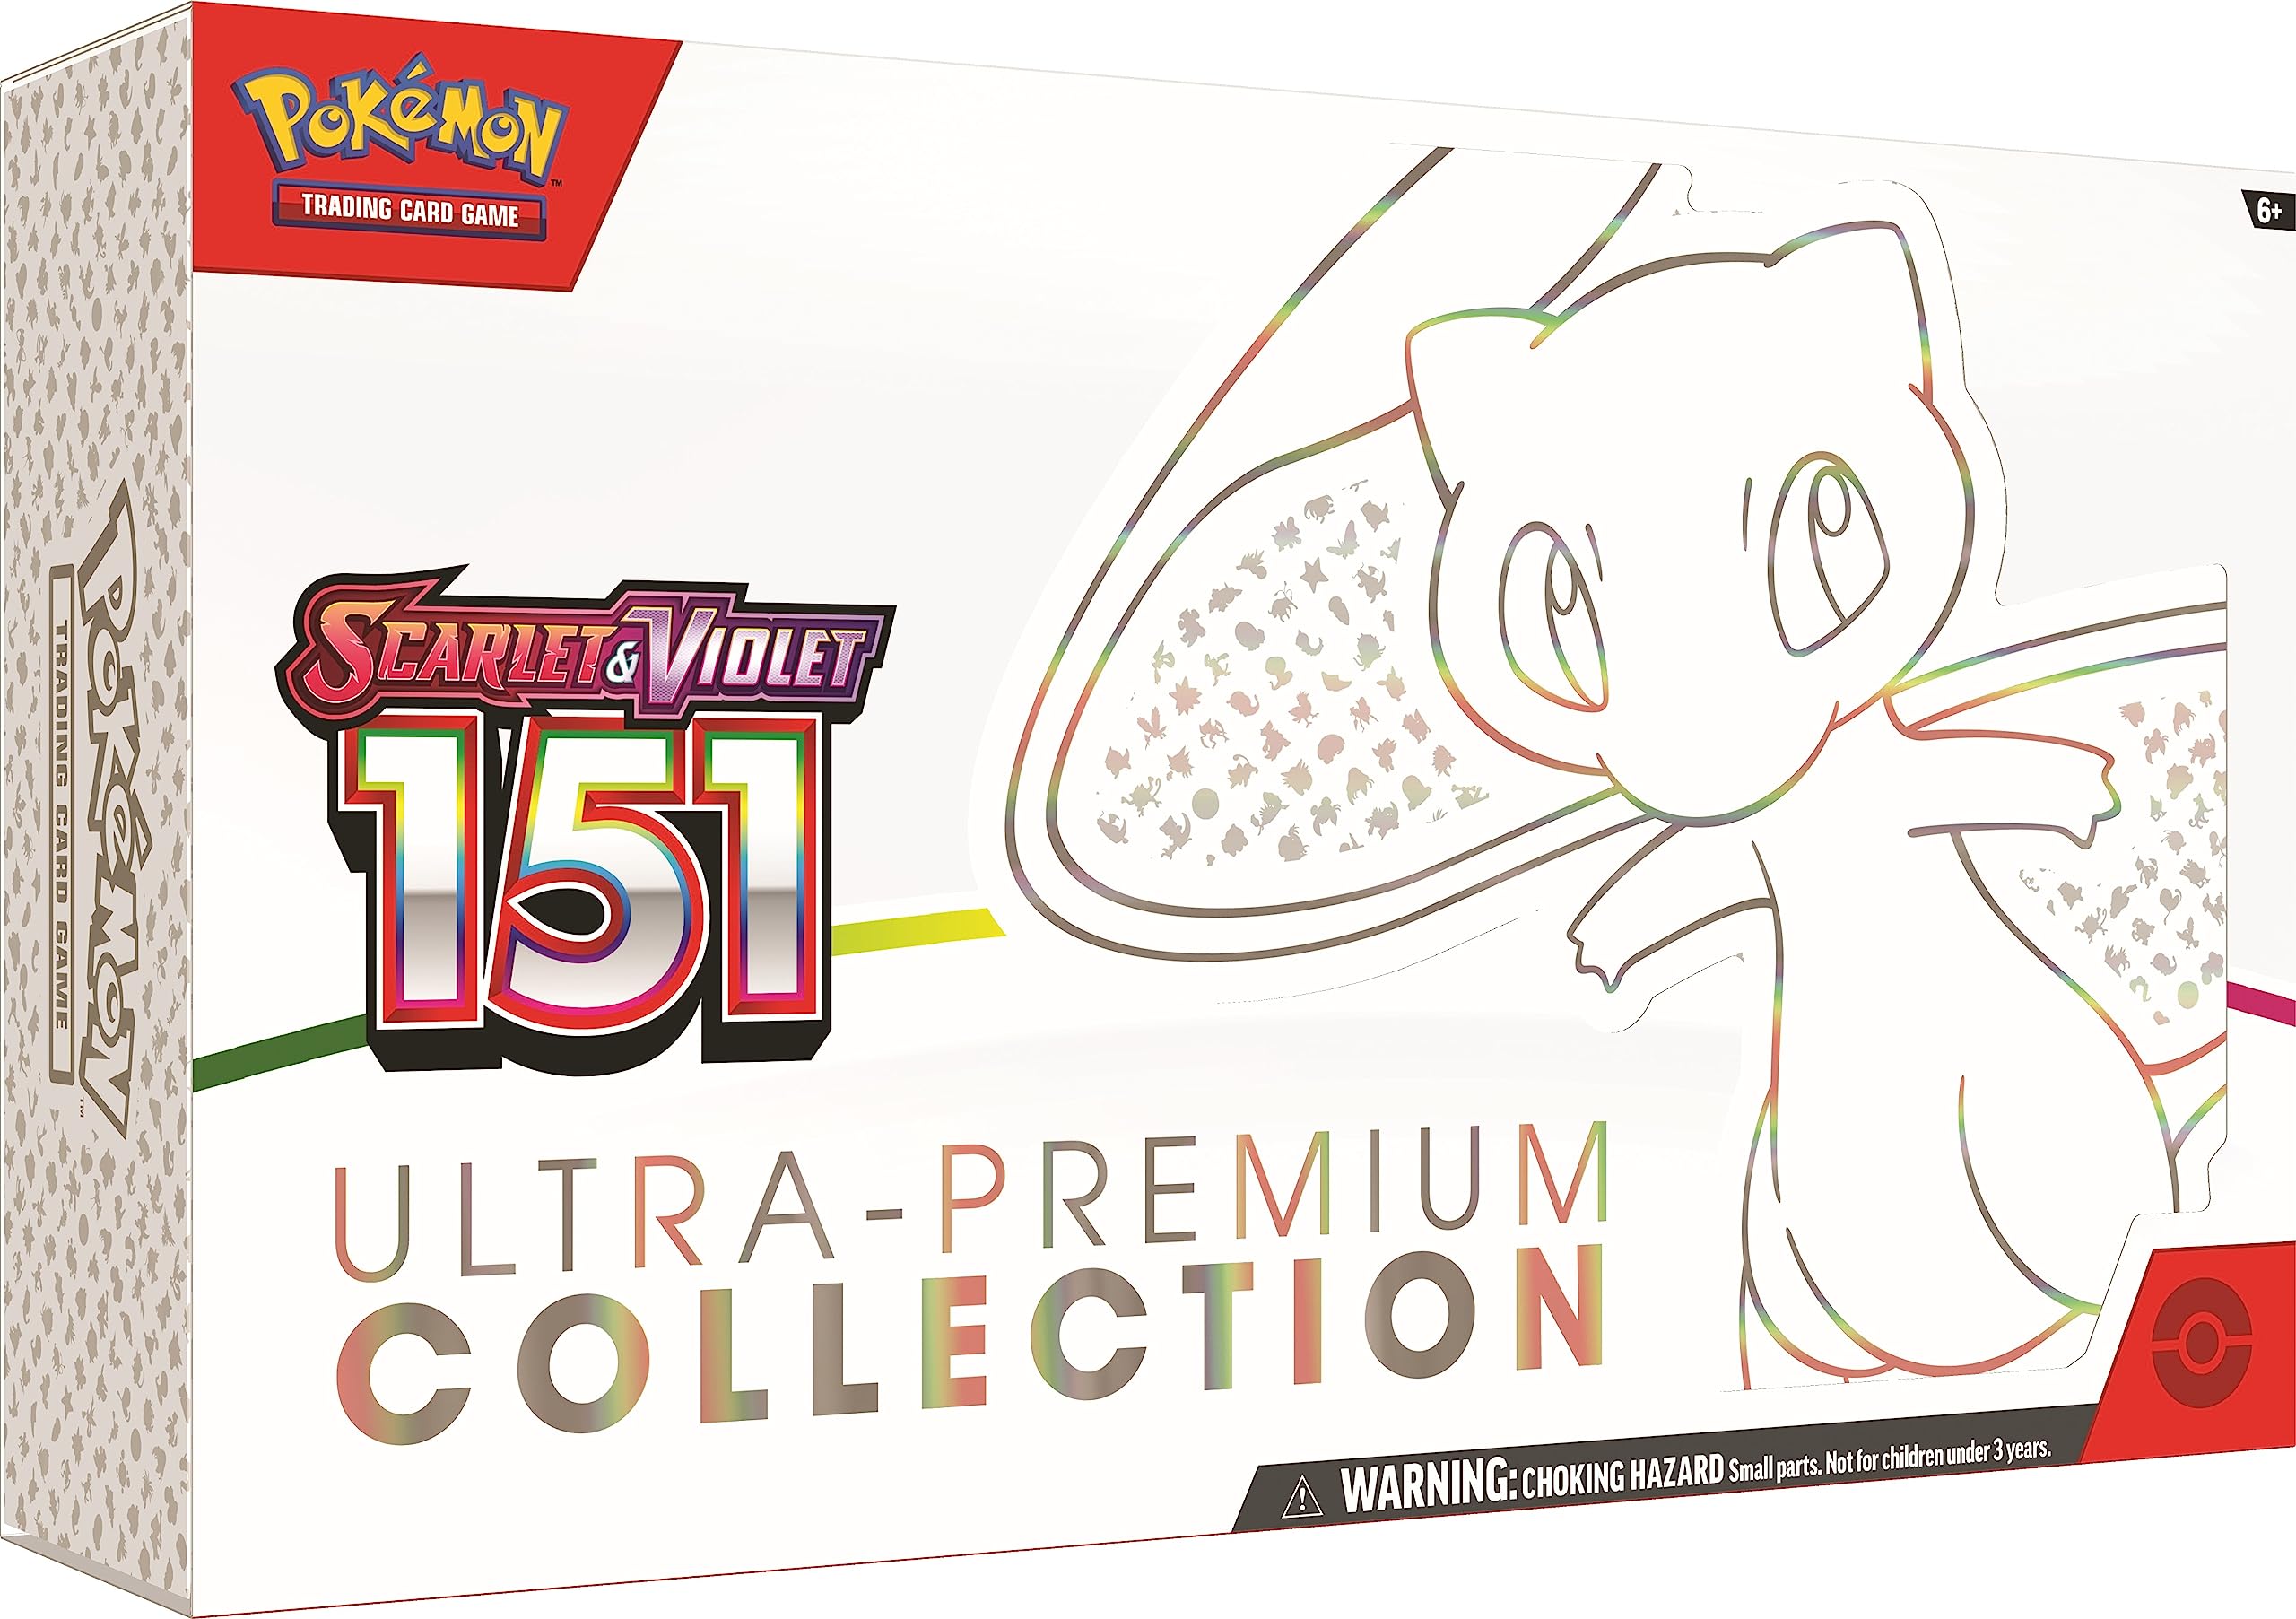 Pokemon Kolekcja TCG Scarlet & Violet 3.5 151 Ultra Premium